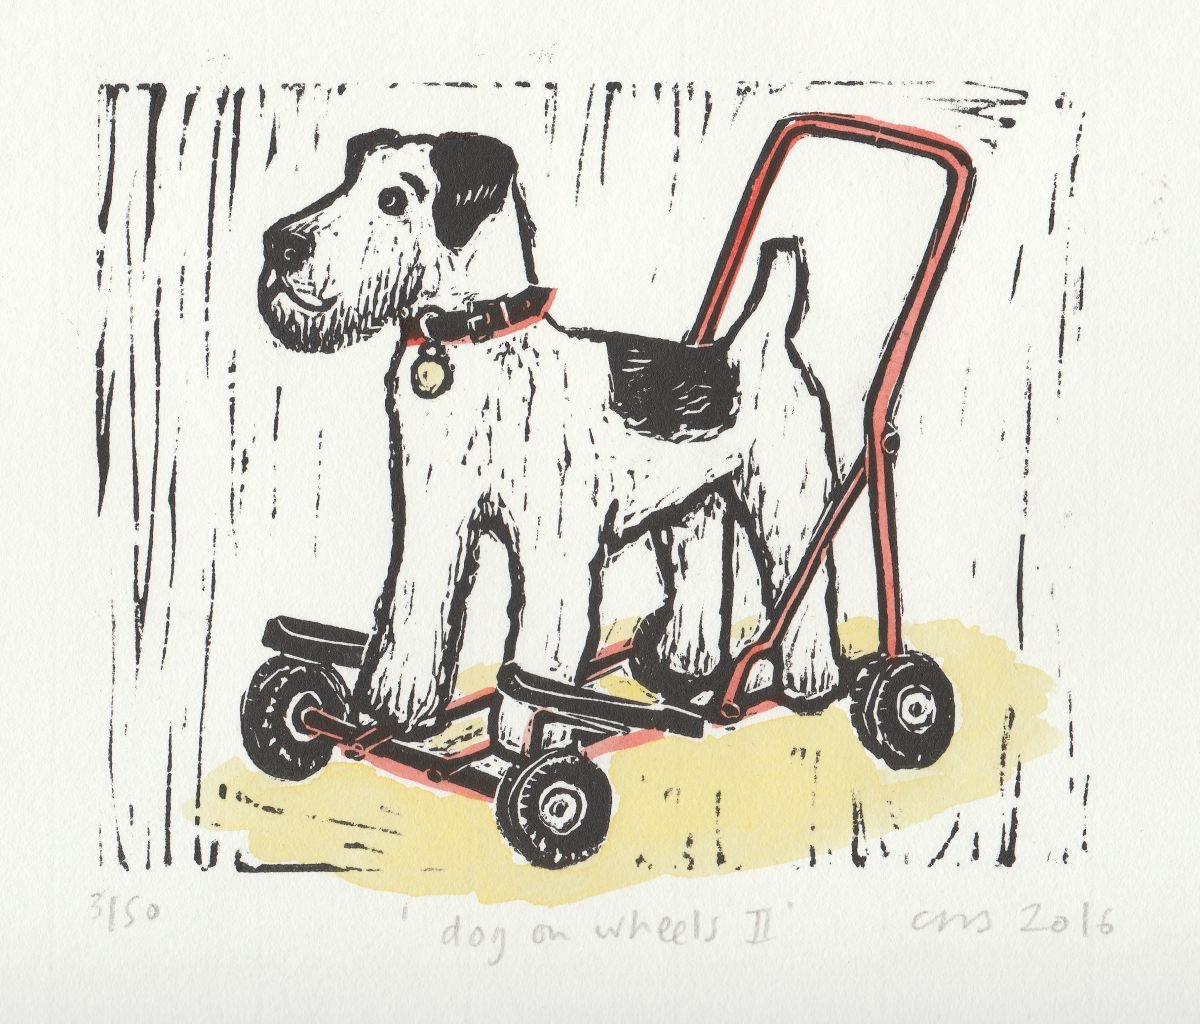 Dog on Wheels II by Caroline Nuttall-Smith